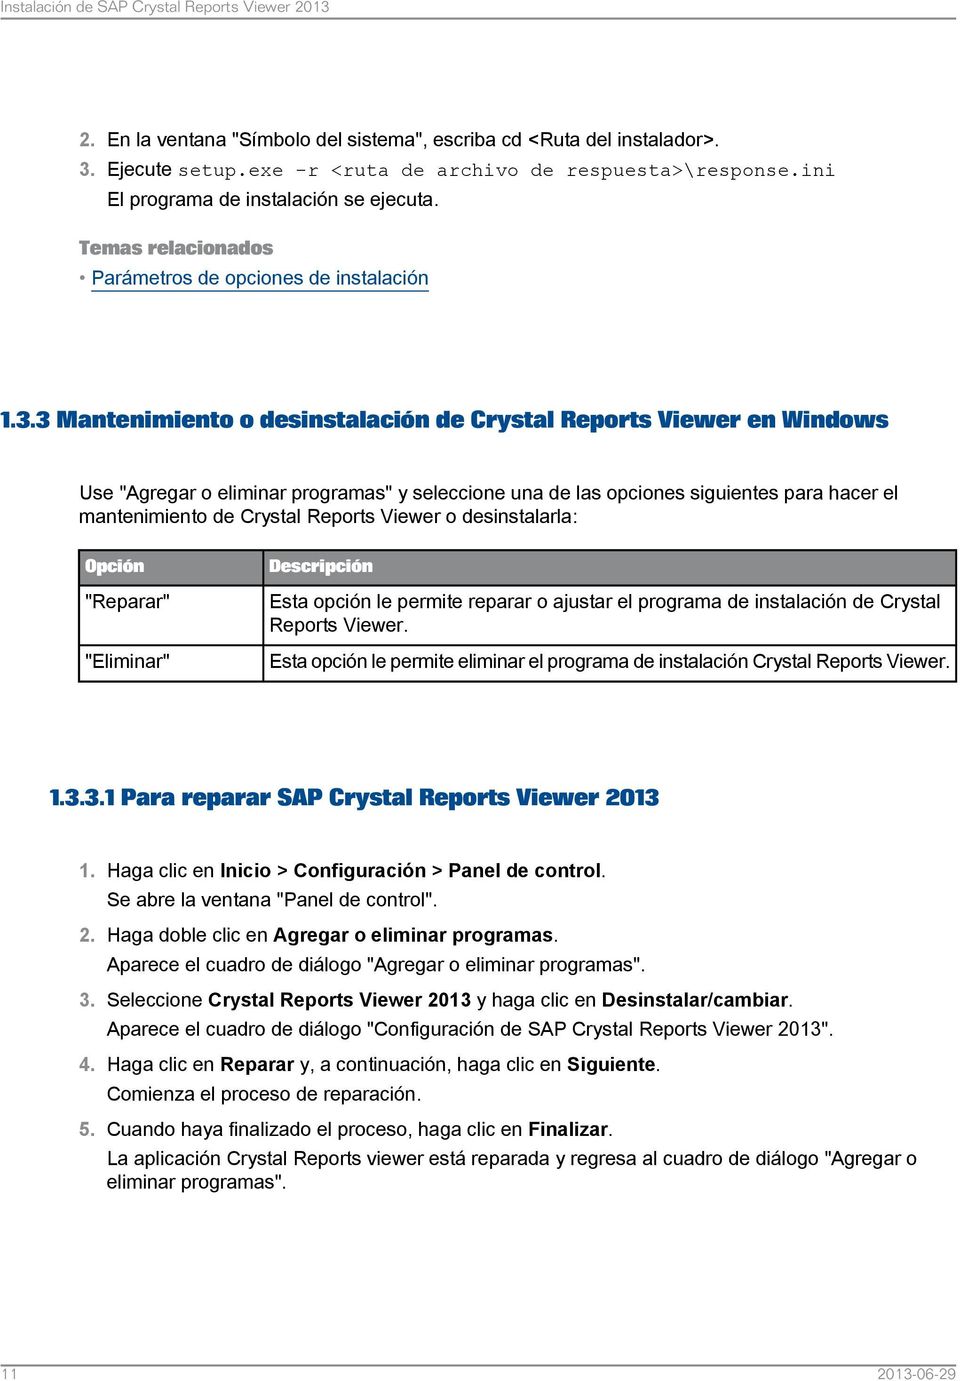 3 Mantenimiento o desinstalación de Crystal Reports Viewer en Windows Use "Agregar o eliminar programas" y seleccione una de las opciones siguientes para hacer el mantenimiento de Crystal Reports